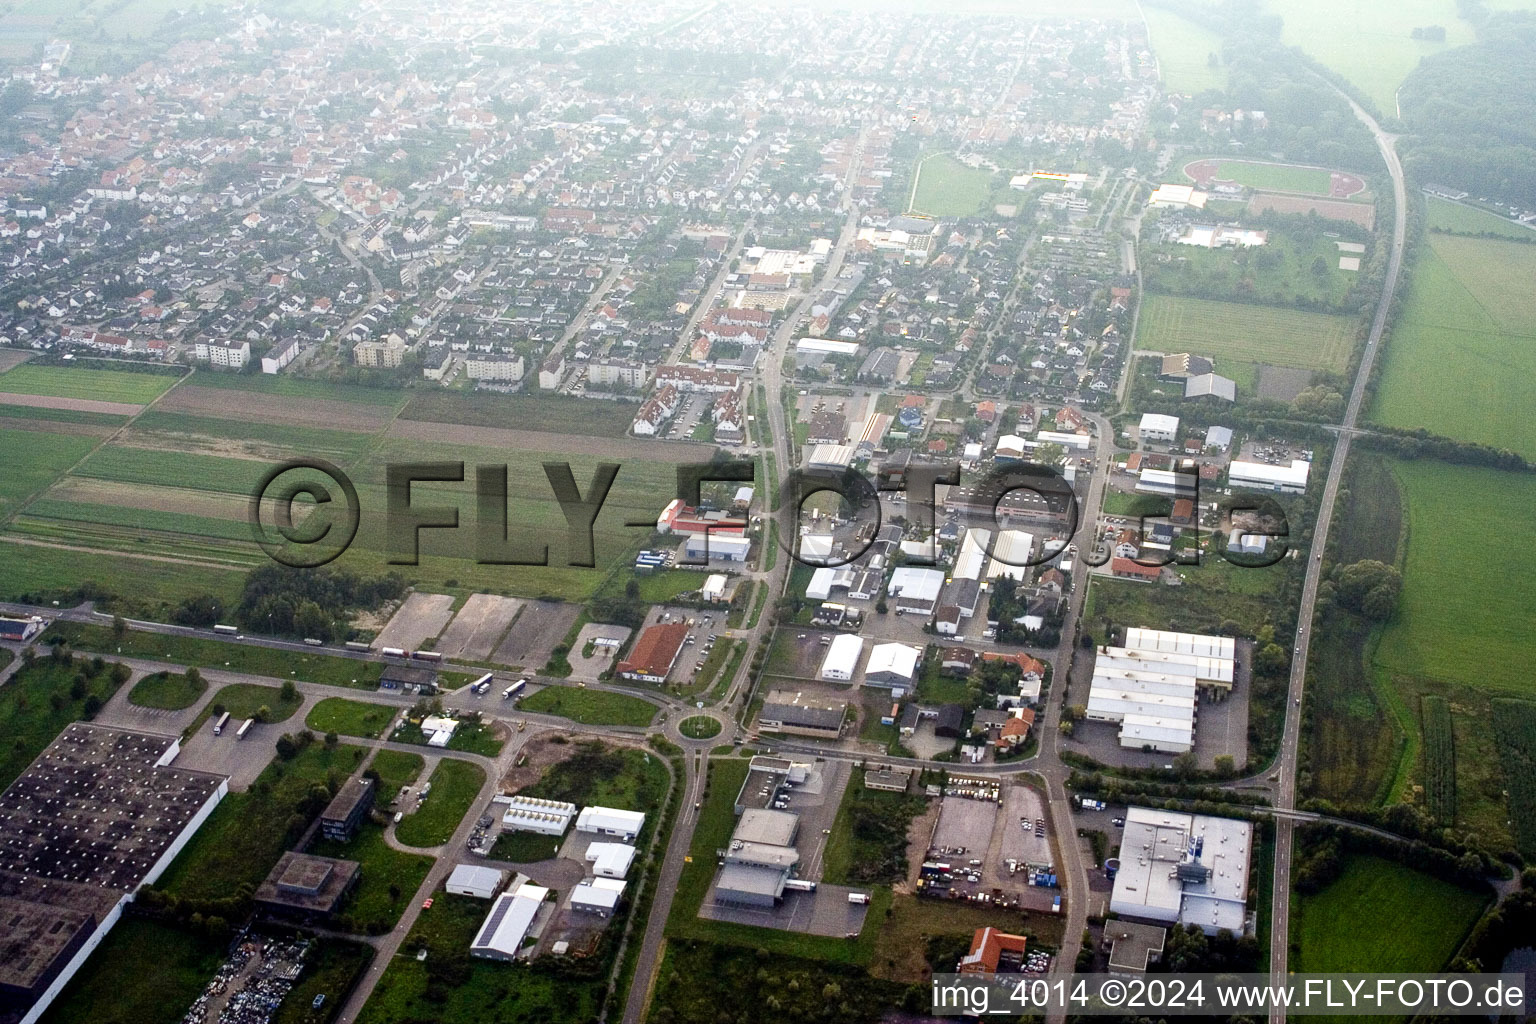 Vue aérienne de Du nord-est à Offenbach an der Queich dans le département Rhénanie-Palatinat, Allemagne